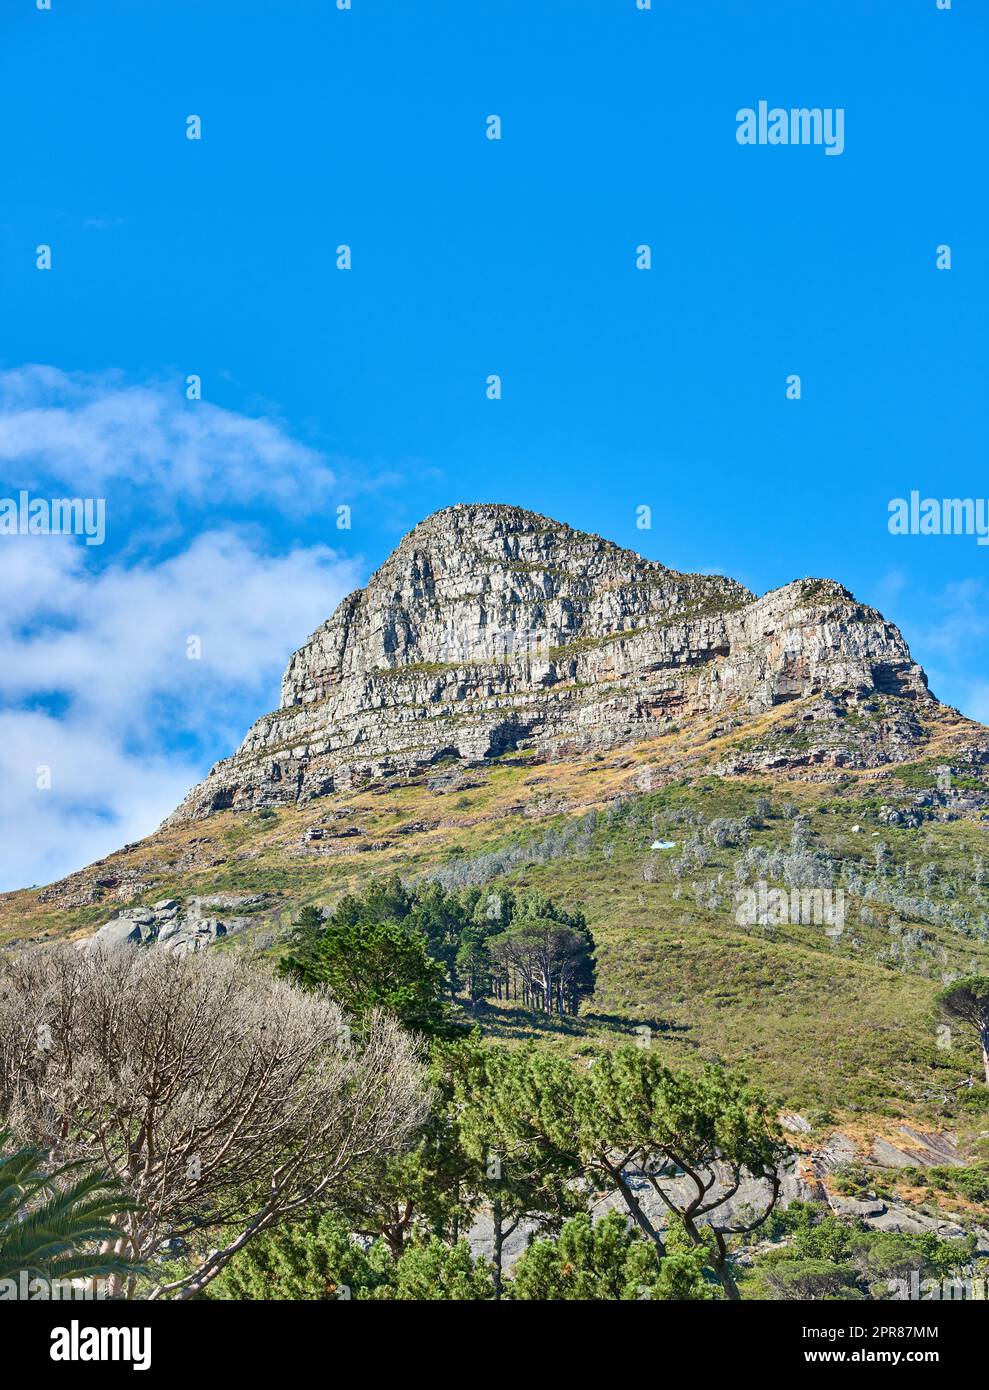 Malerische Landschaft mit blauem Himmel über dem Gipfel des Tafelbergs in Kapstadt an einem sonnigen Tag von unten. Wunderschöne Aussicht auf Pflanzen und Bäume rund um eine beliebte Touristenattraktion und ein Naturdenkmal Stockfoto